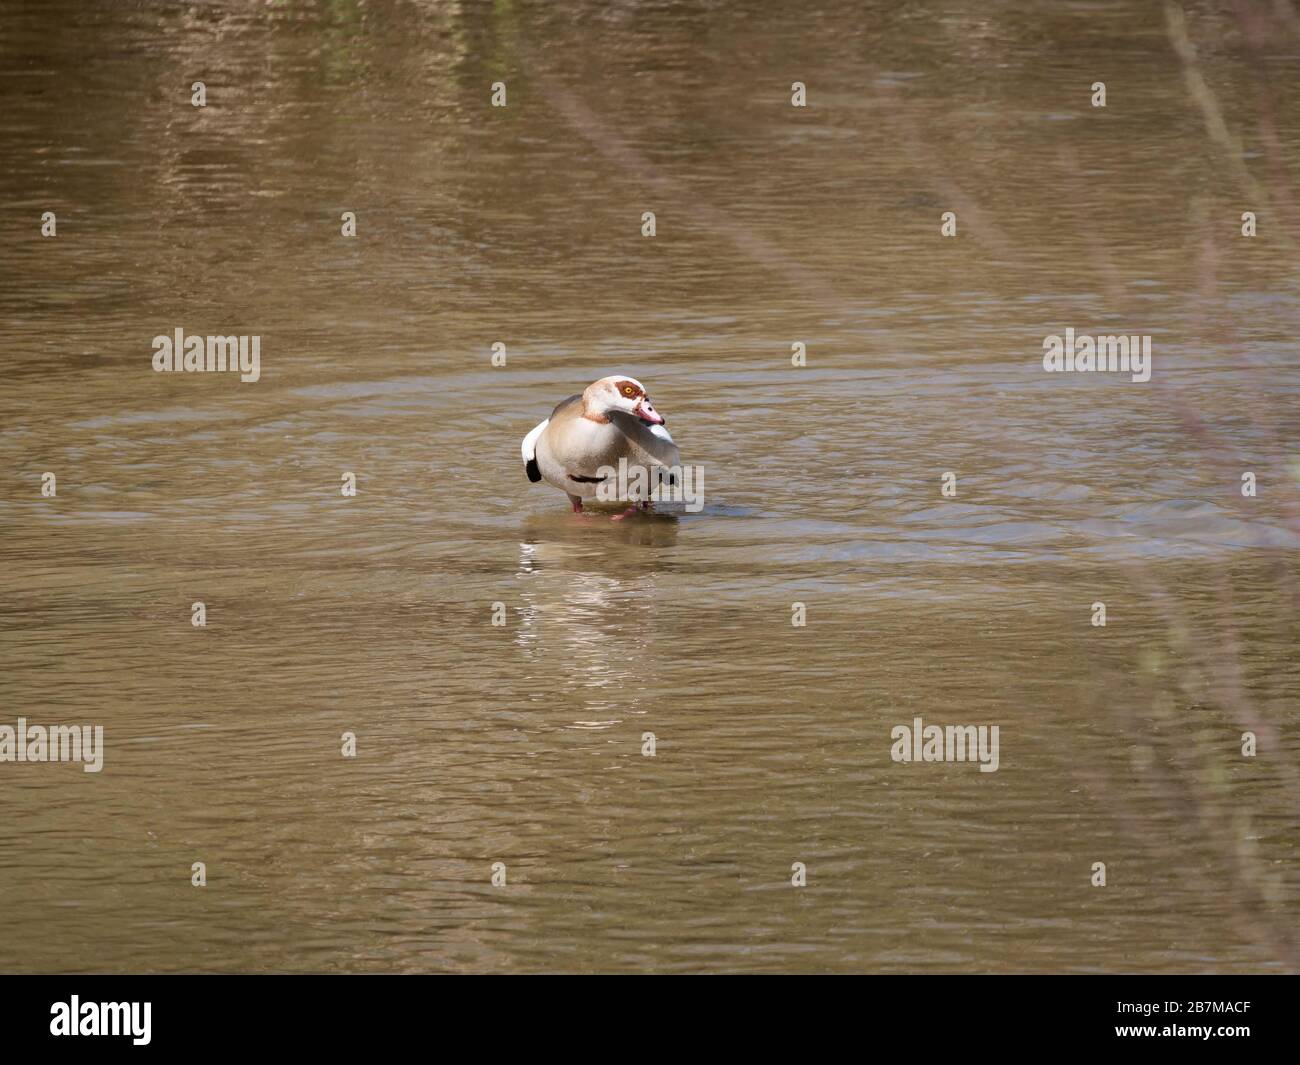 Nile goose invasive species in the Appleres river in Madrid Stock Photo